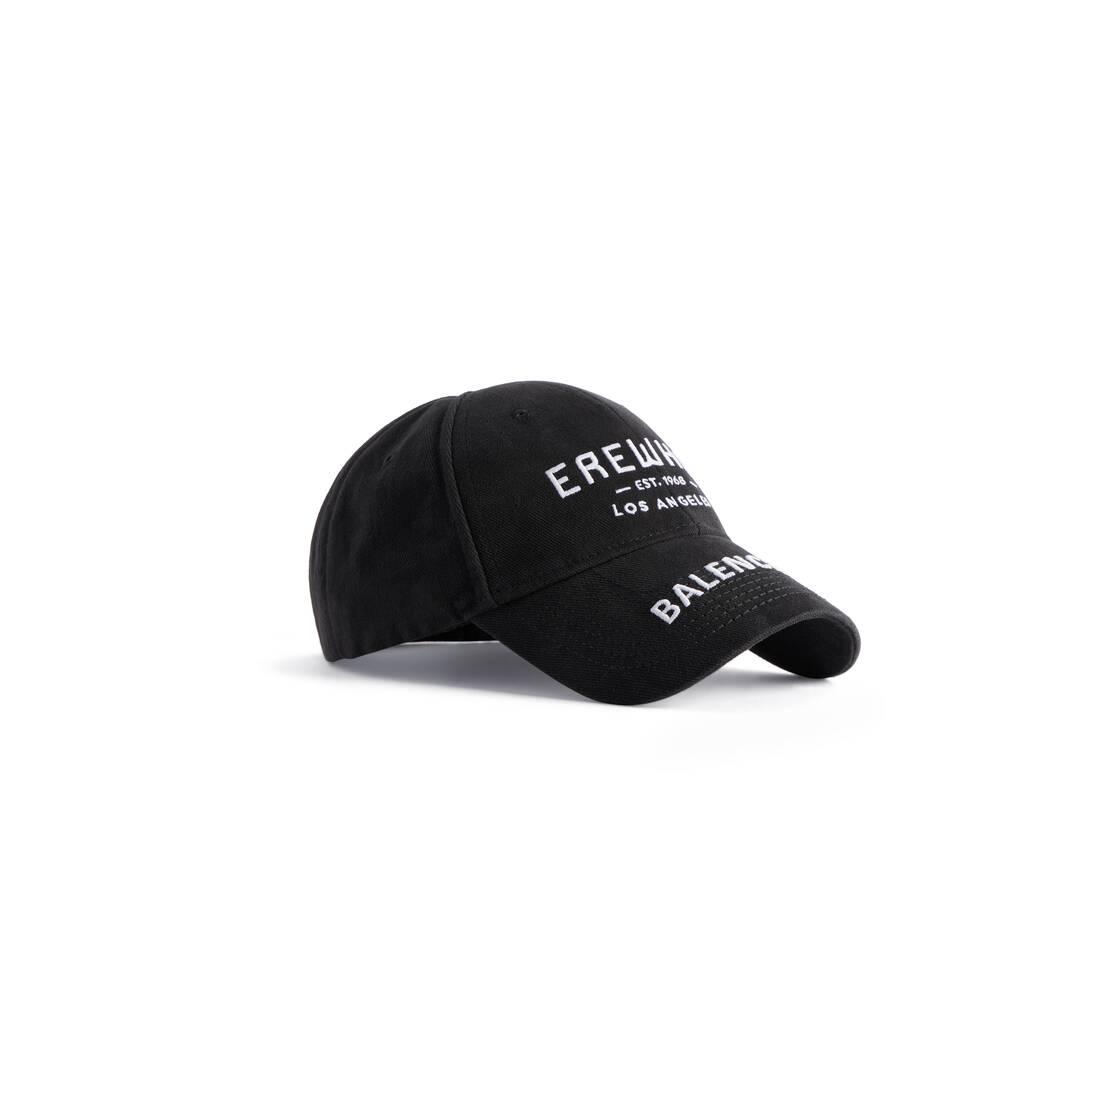 Balenciaga Erewhon® Los Angeles Cap in Black